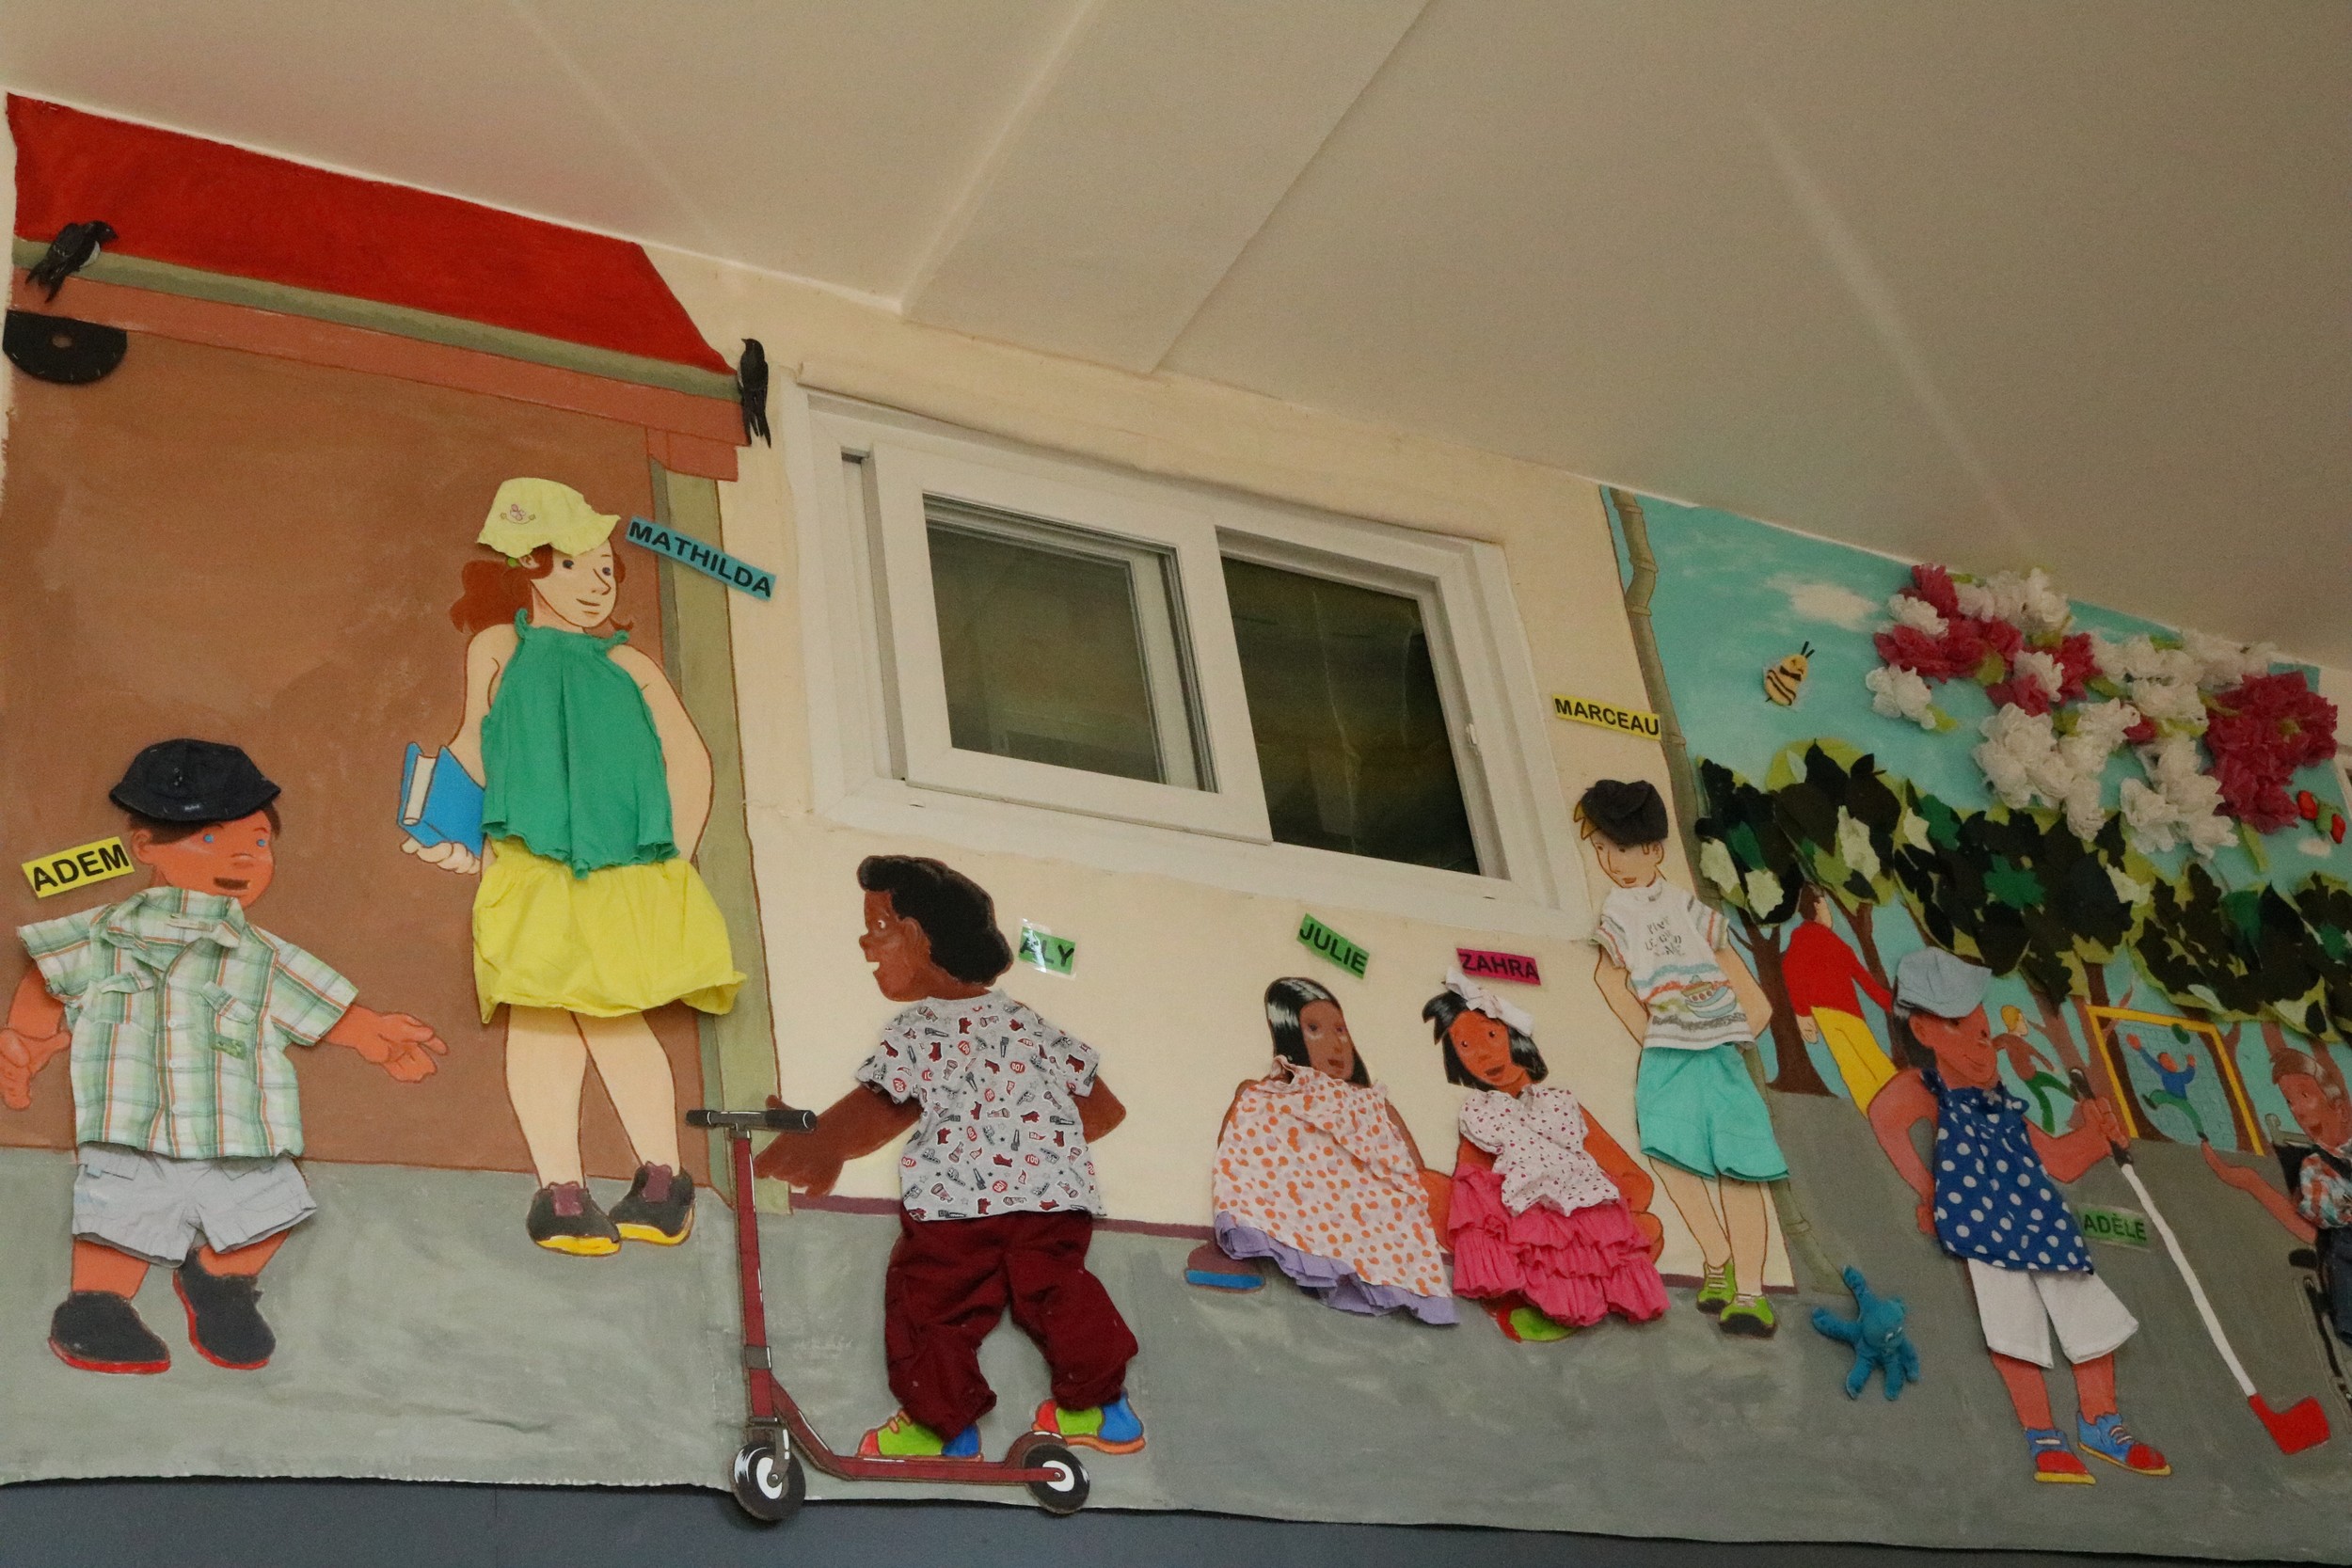 Le 3 juillet 2019, La fresque des enfants de l’IME La Passerelle et du Centre Gauguin a été inaugurée dans les locaux de l’association Agir La Rédingote pour sa métamorphose estivale